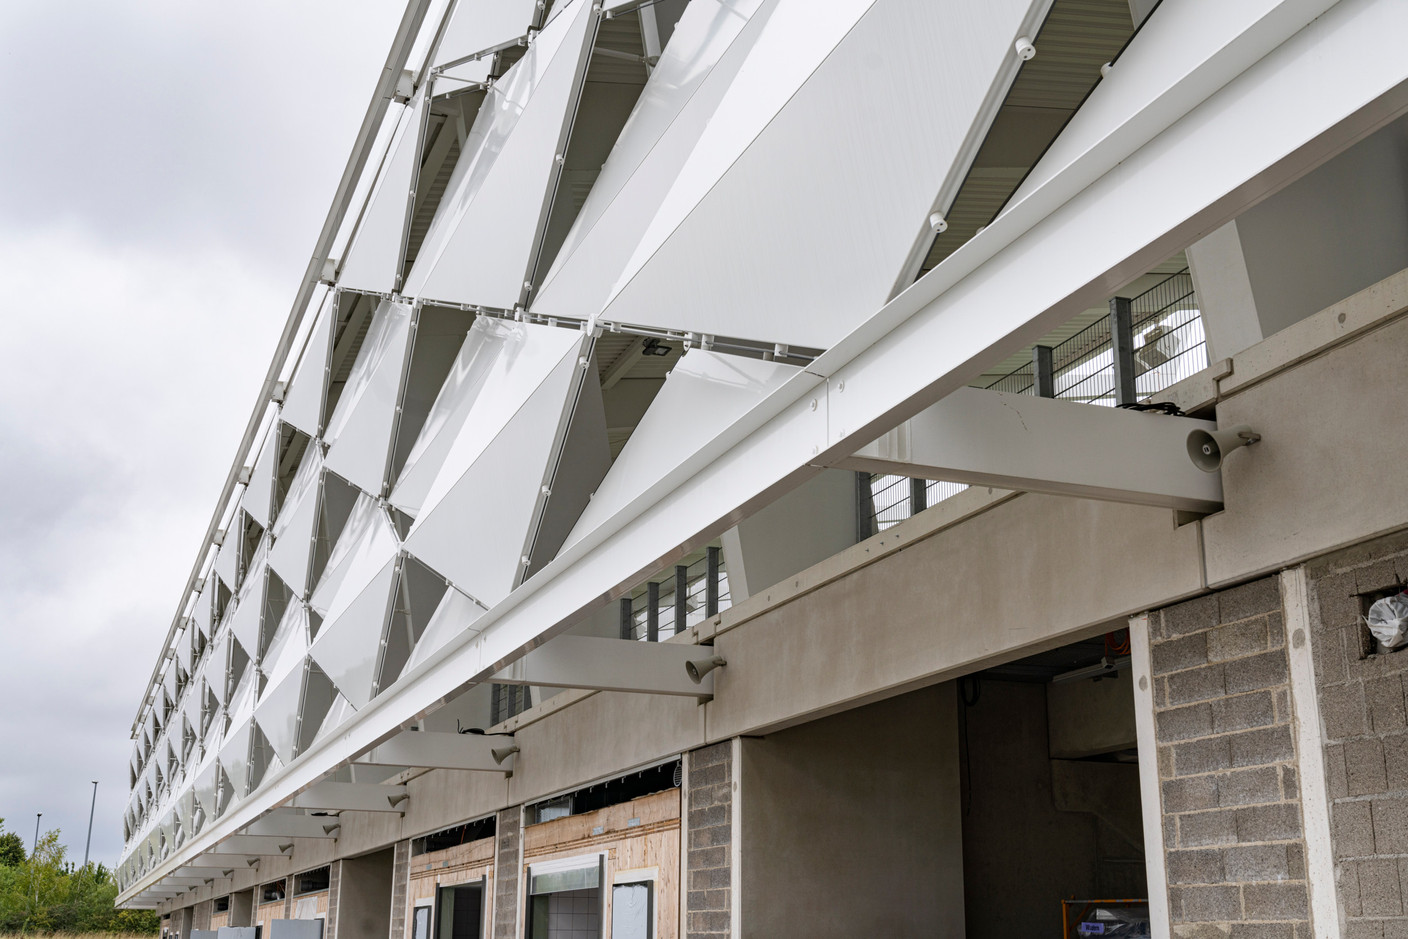 L’enveloppe du stade consiste en des éléments de façade métalliques en forme de losange mis en scène par une illumination aux scénarios variés. (Photo: Caroline Martin)